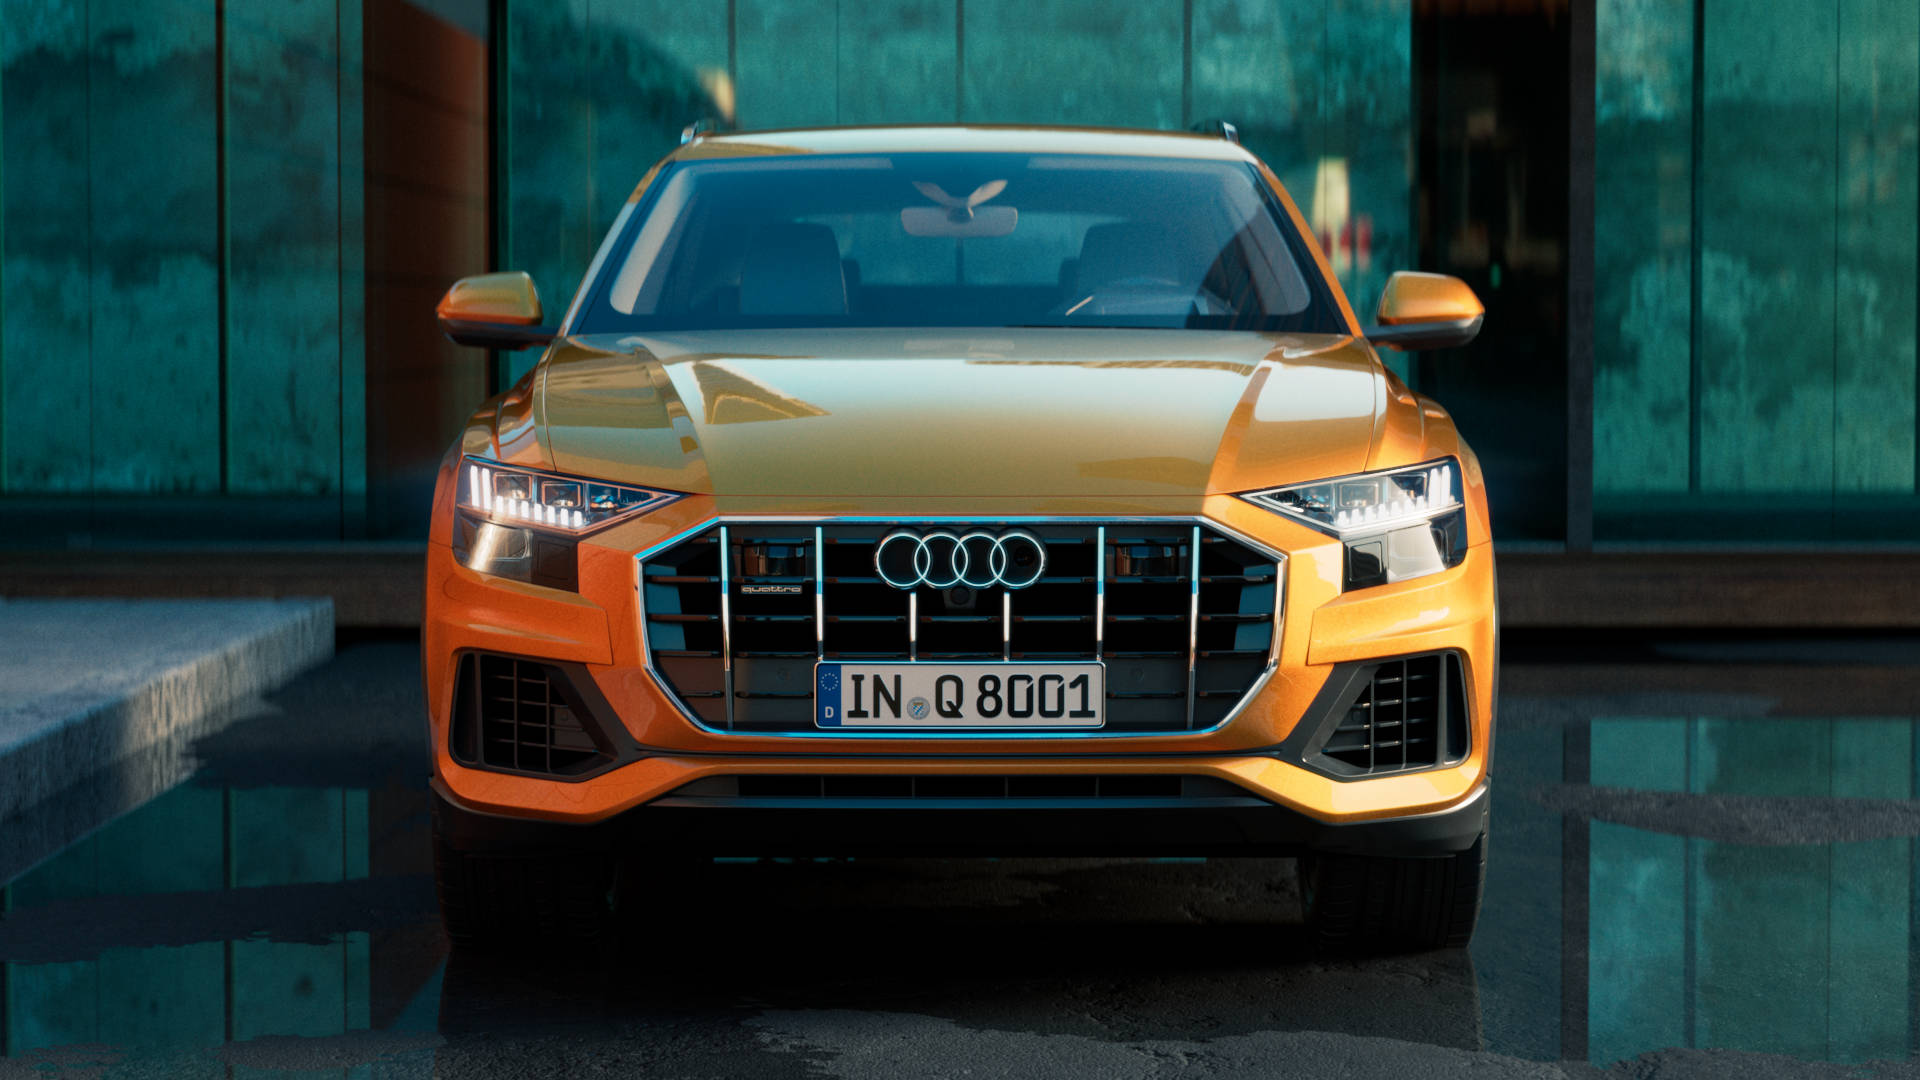 Audi Q8 front view close-up.